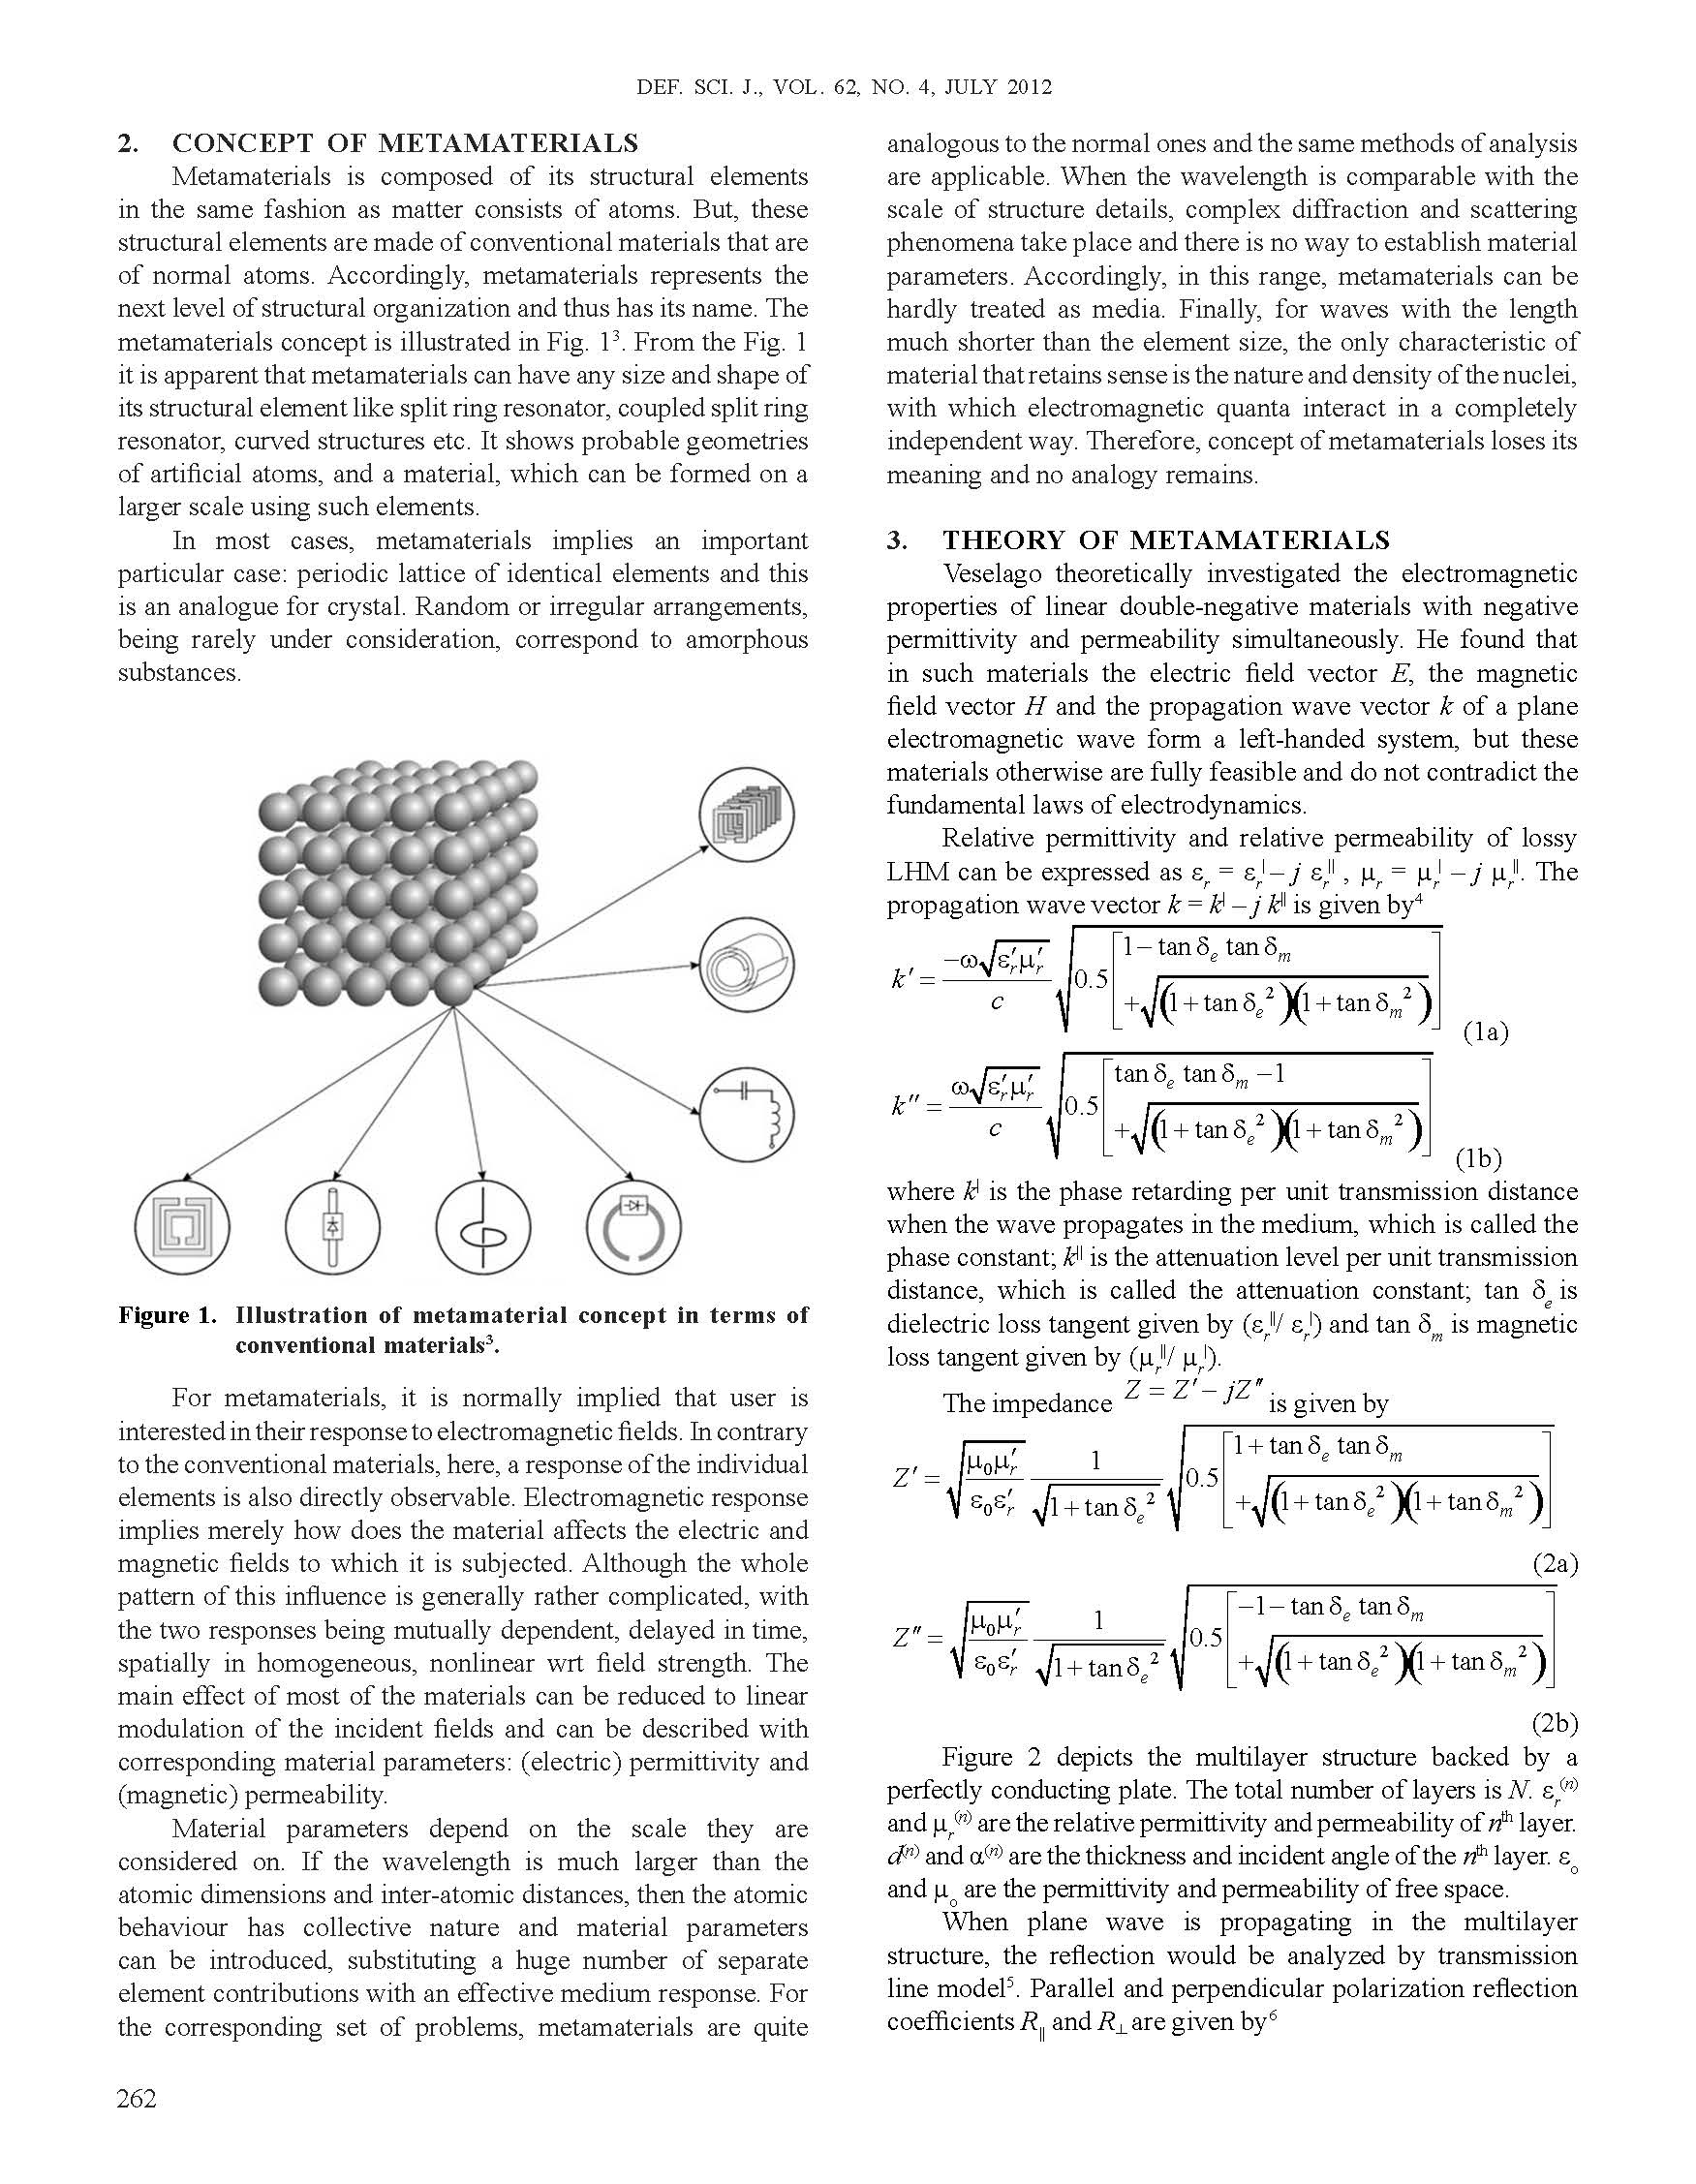 Metamaterials inEM wave absorbers_Page_2.jpg